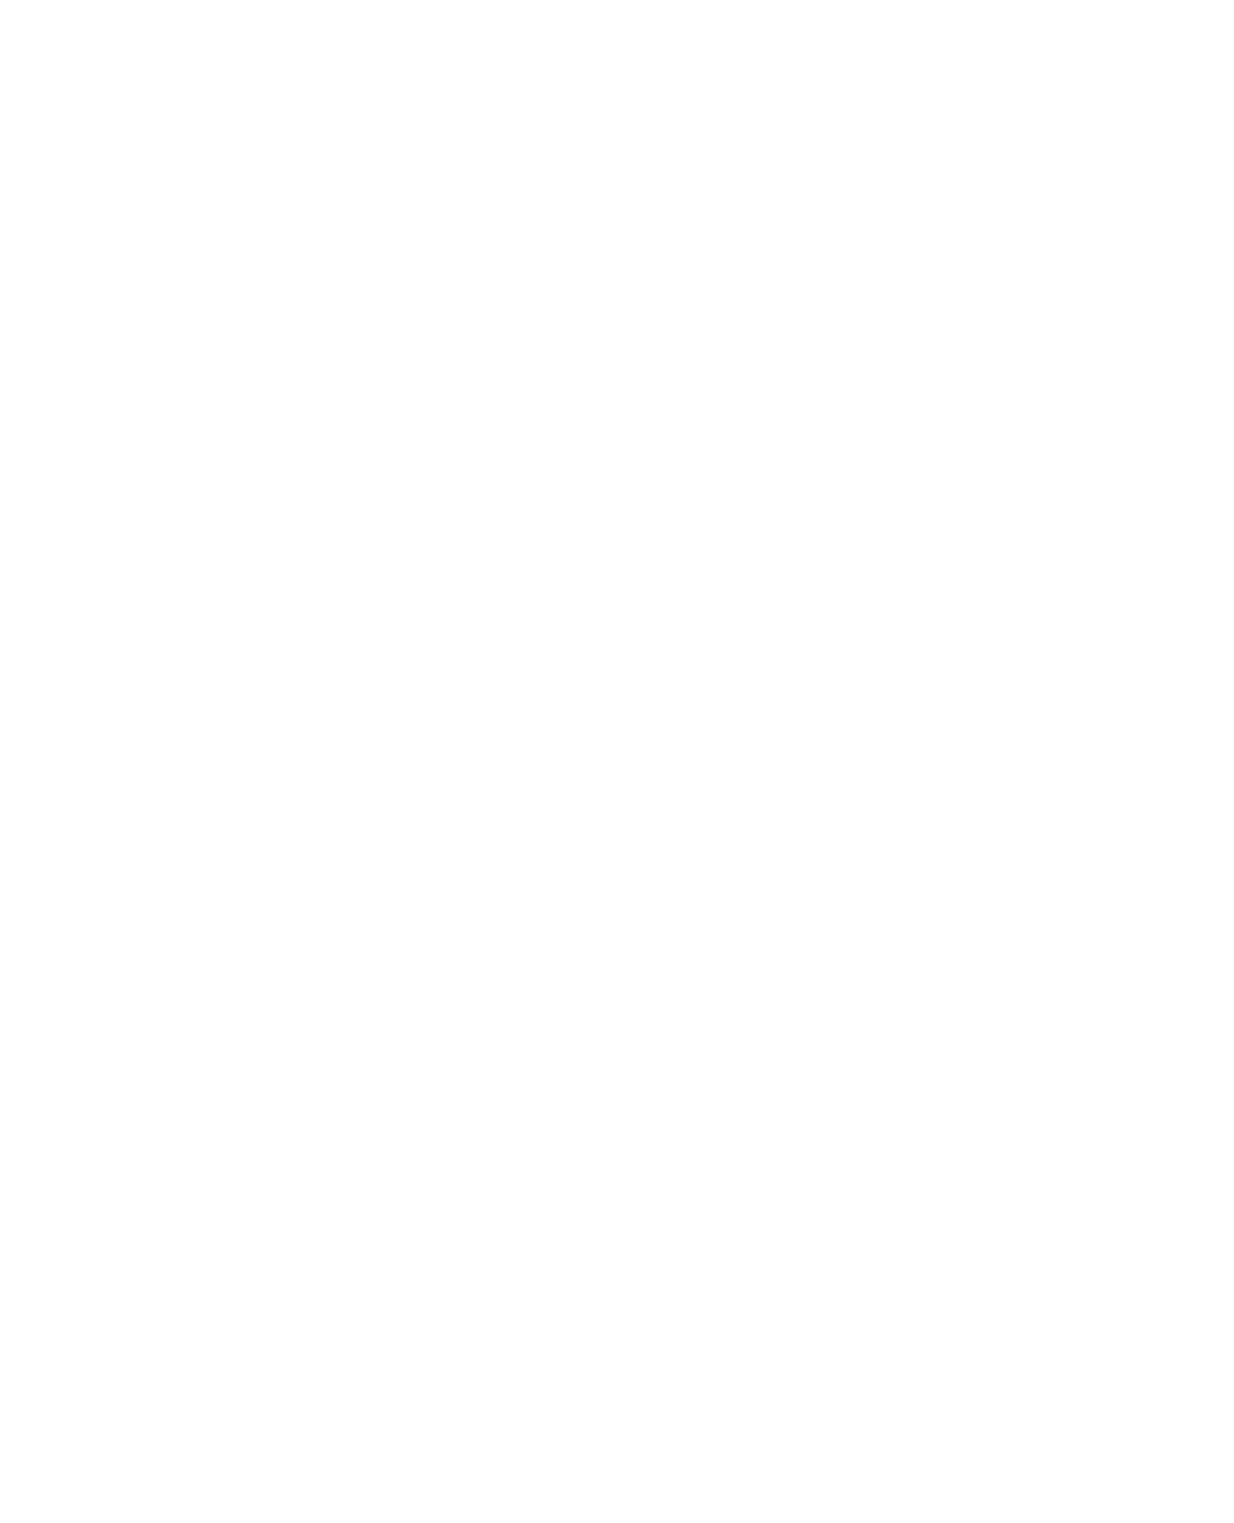 PChem (Petronas Chemicals Group) logo pour fonds sombres (PNG transparent)